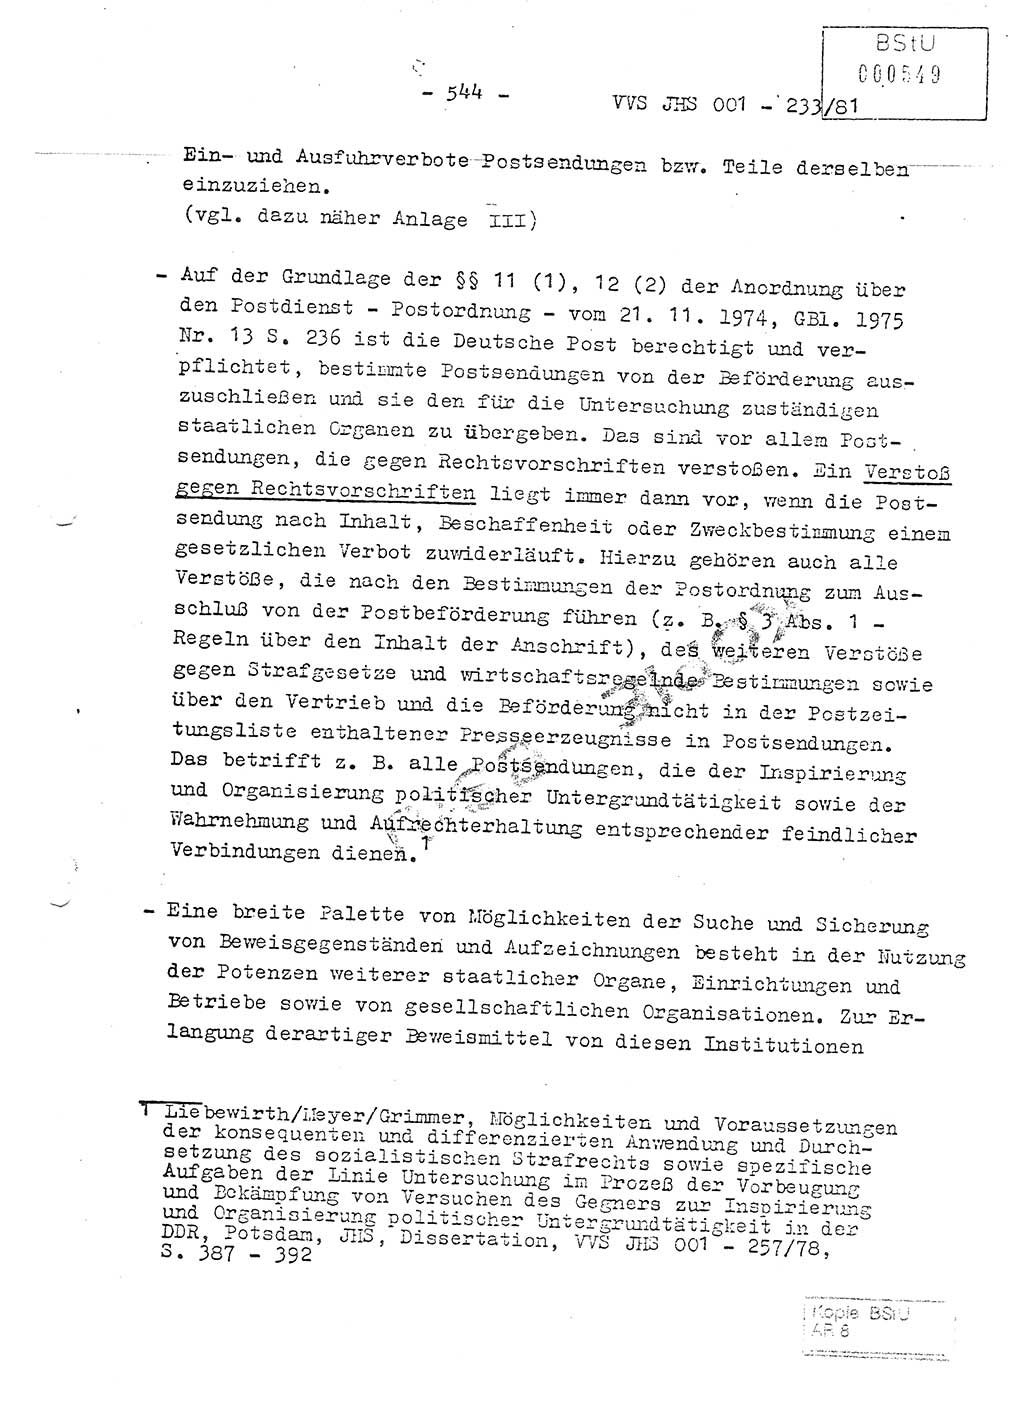 Dissertation Oberstleutnant Horst Zank (JHS), Oberstleutnant Dr. Karl-Heinz Knoblauch (JHS), Oberstleutnant Gustav-Adolf Kowalewski (HA Ⅸ), Oberstleutnant Wolfgang Plötner (HA Ⅸ), Ministerium für Staatssicherheit (MfS) [Deutsche Demokratische Republik (DDR)], Juristische Hochschule (JHS), Vertrauliche Verschlußsache (VVS) o001-233/81, Potsdam 1981, Blatt 544 (Diss. MfS DDR JHS VVS o001-233/81 1981, Bl. 544)